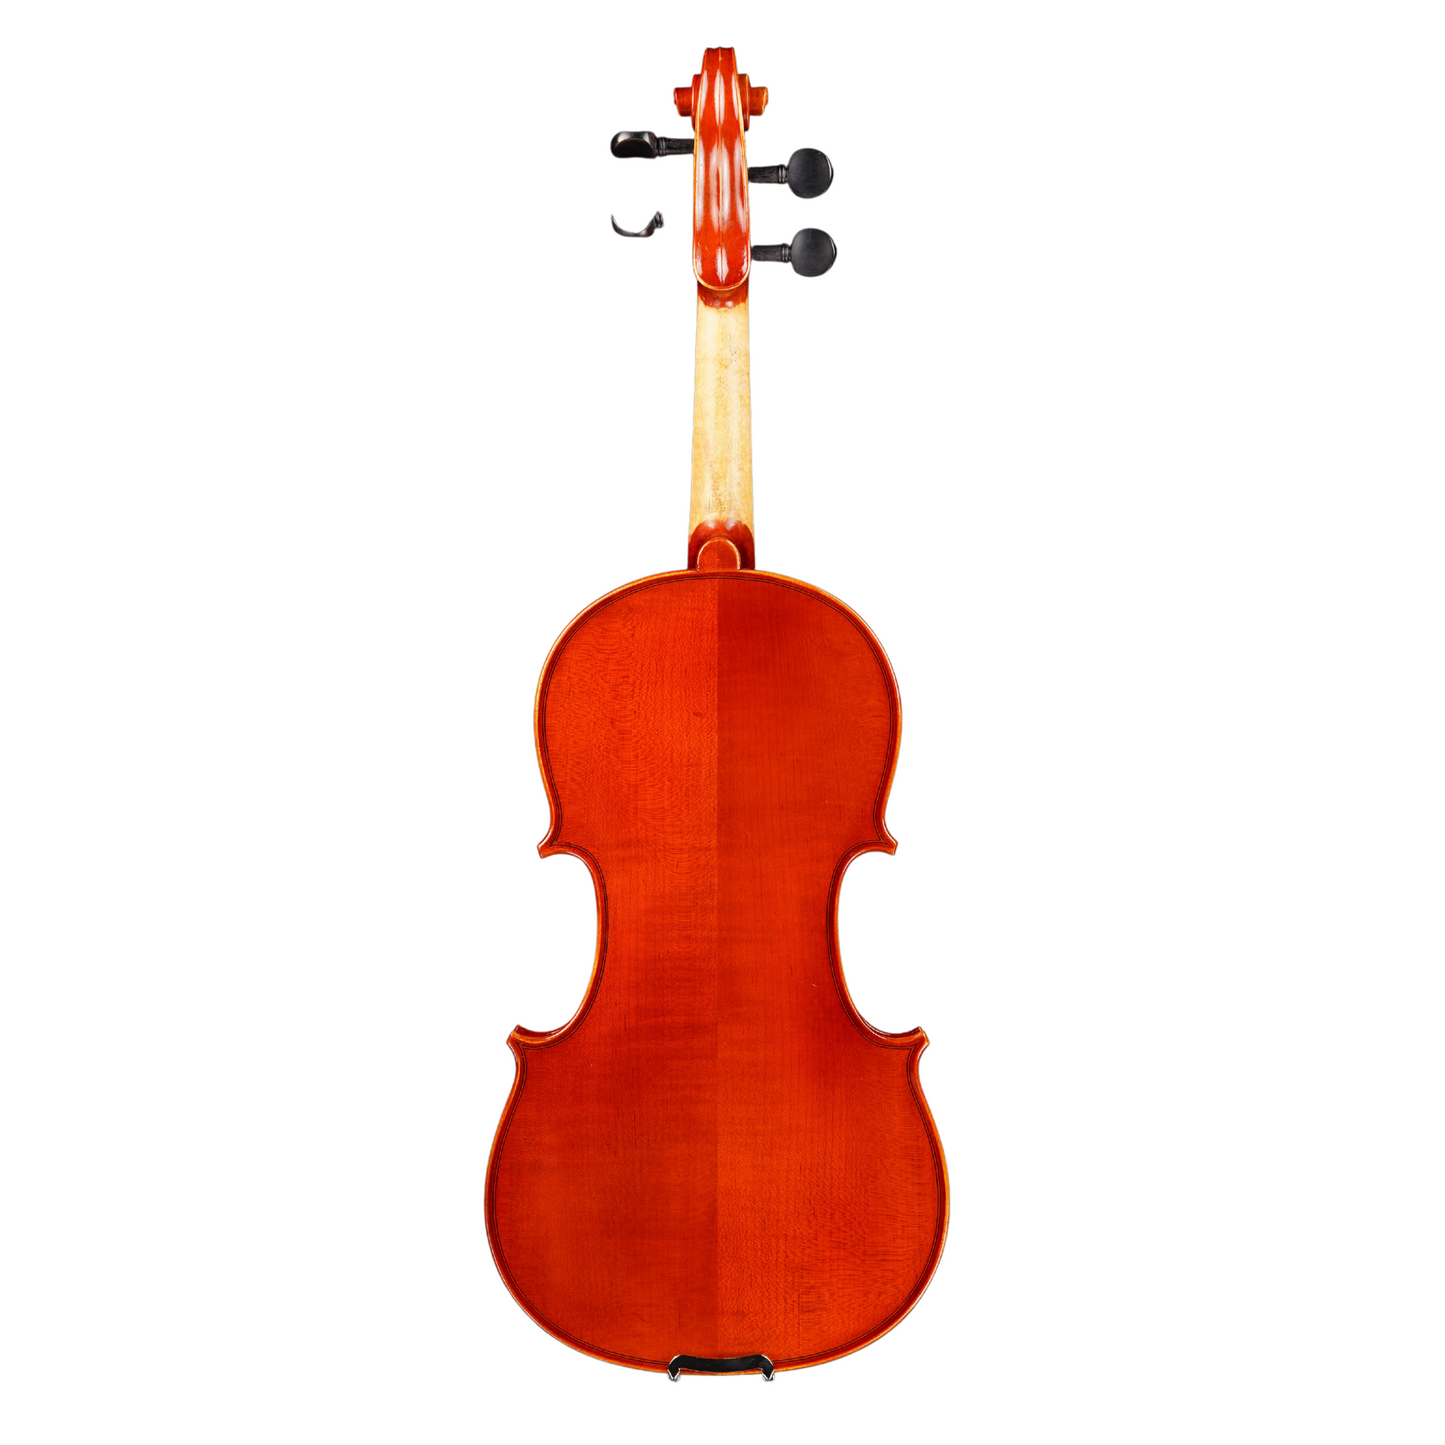 Vincenzo Bellini VB-100 Violin